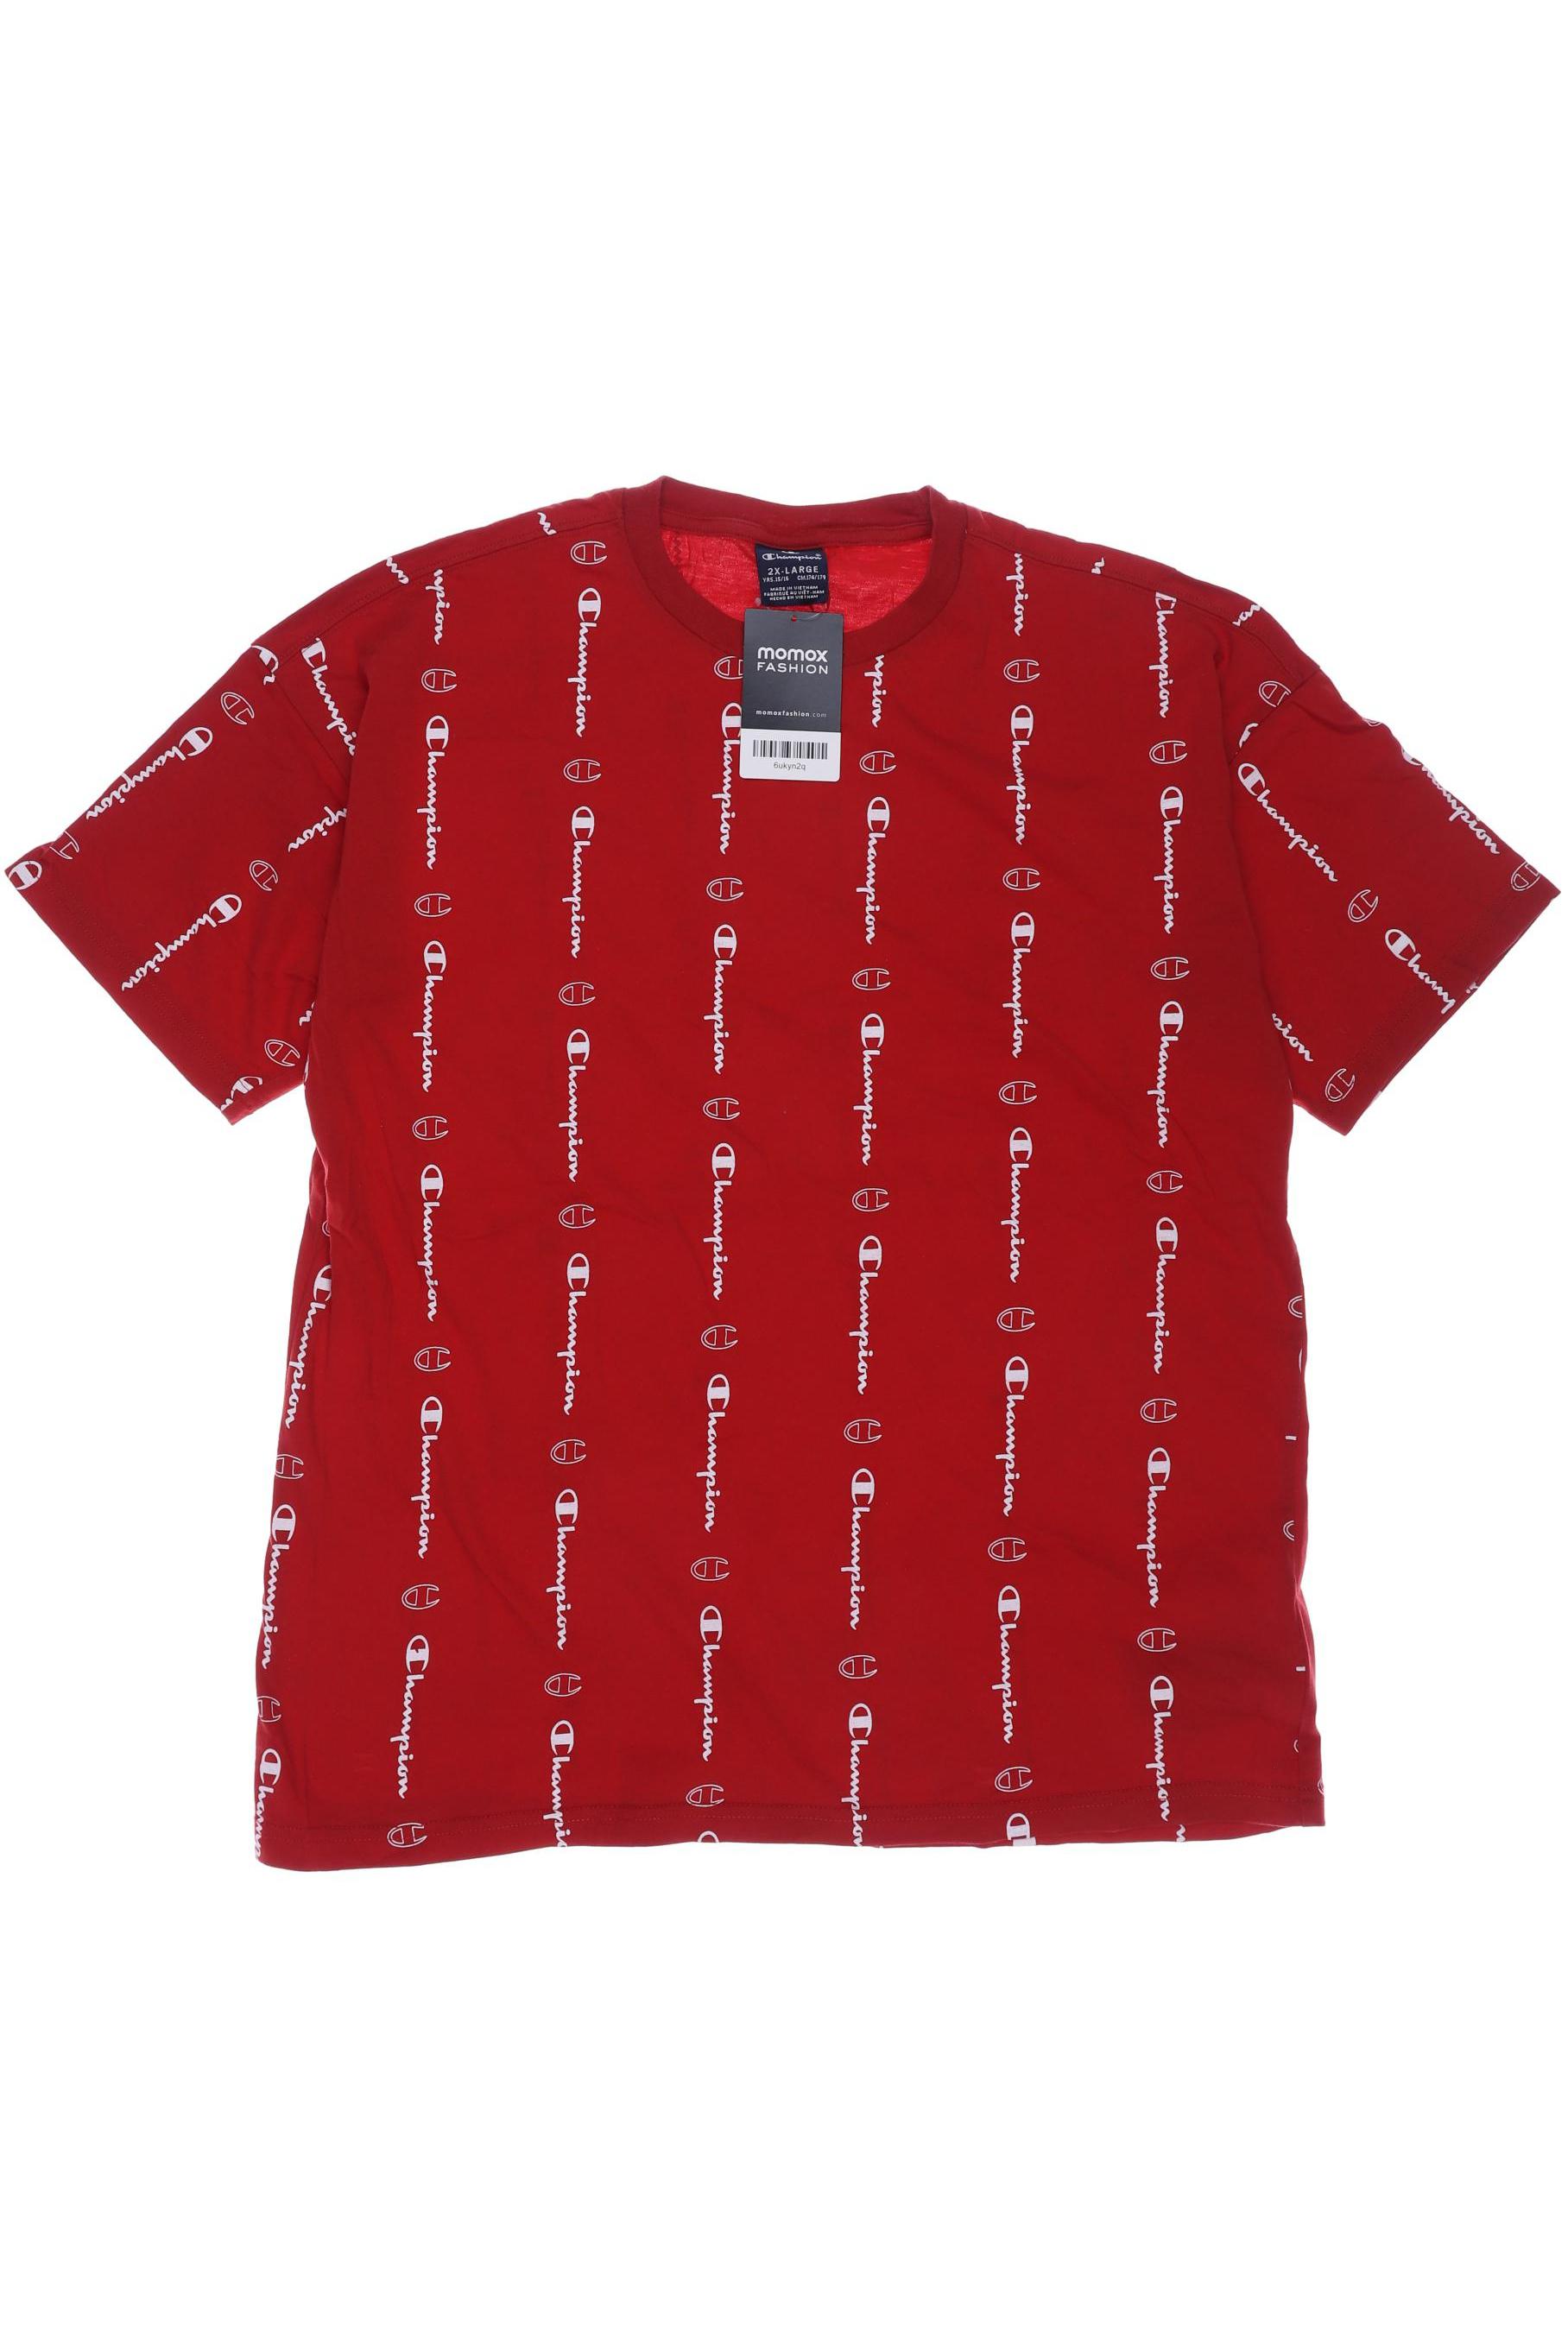 Champion Herren T-Shirt, rot, Gr. 176 von Champion